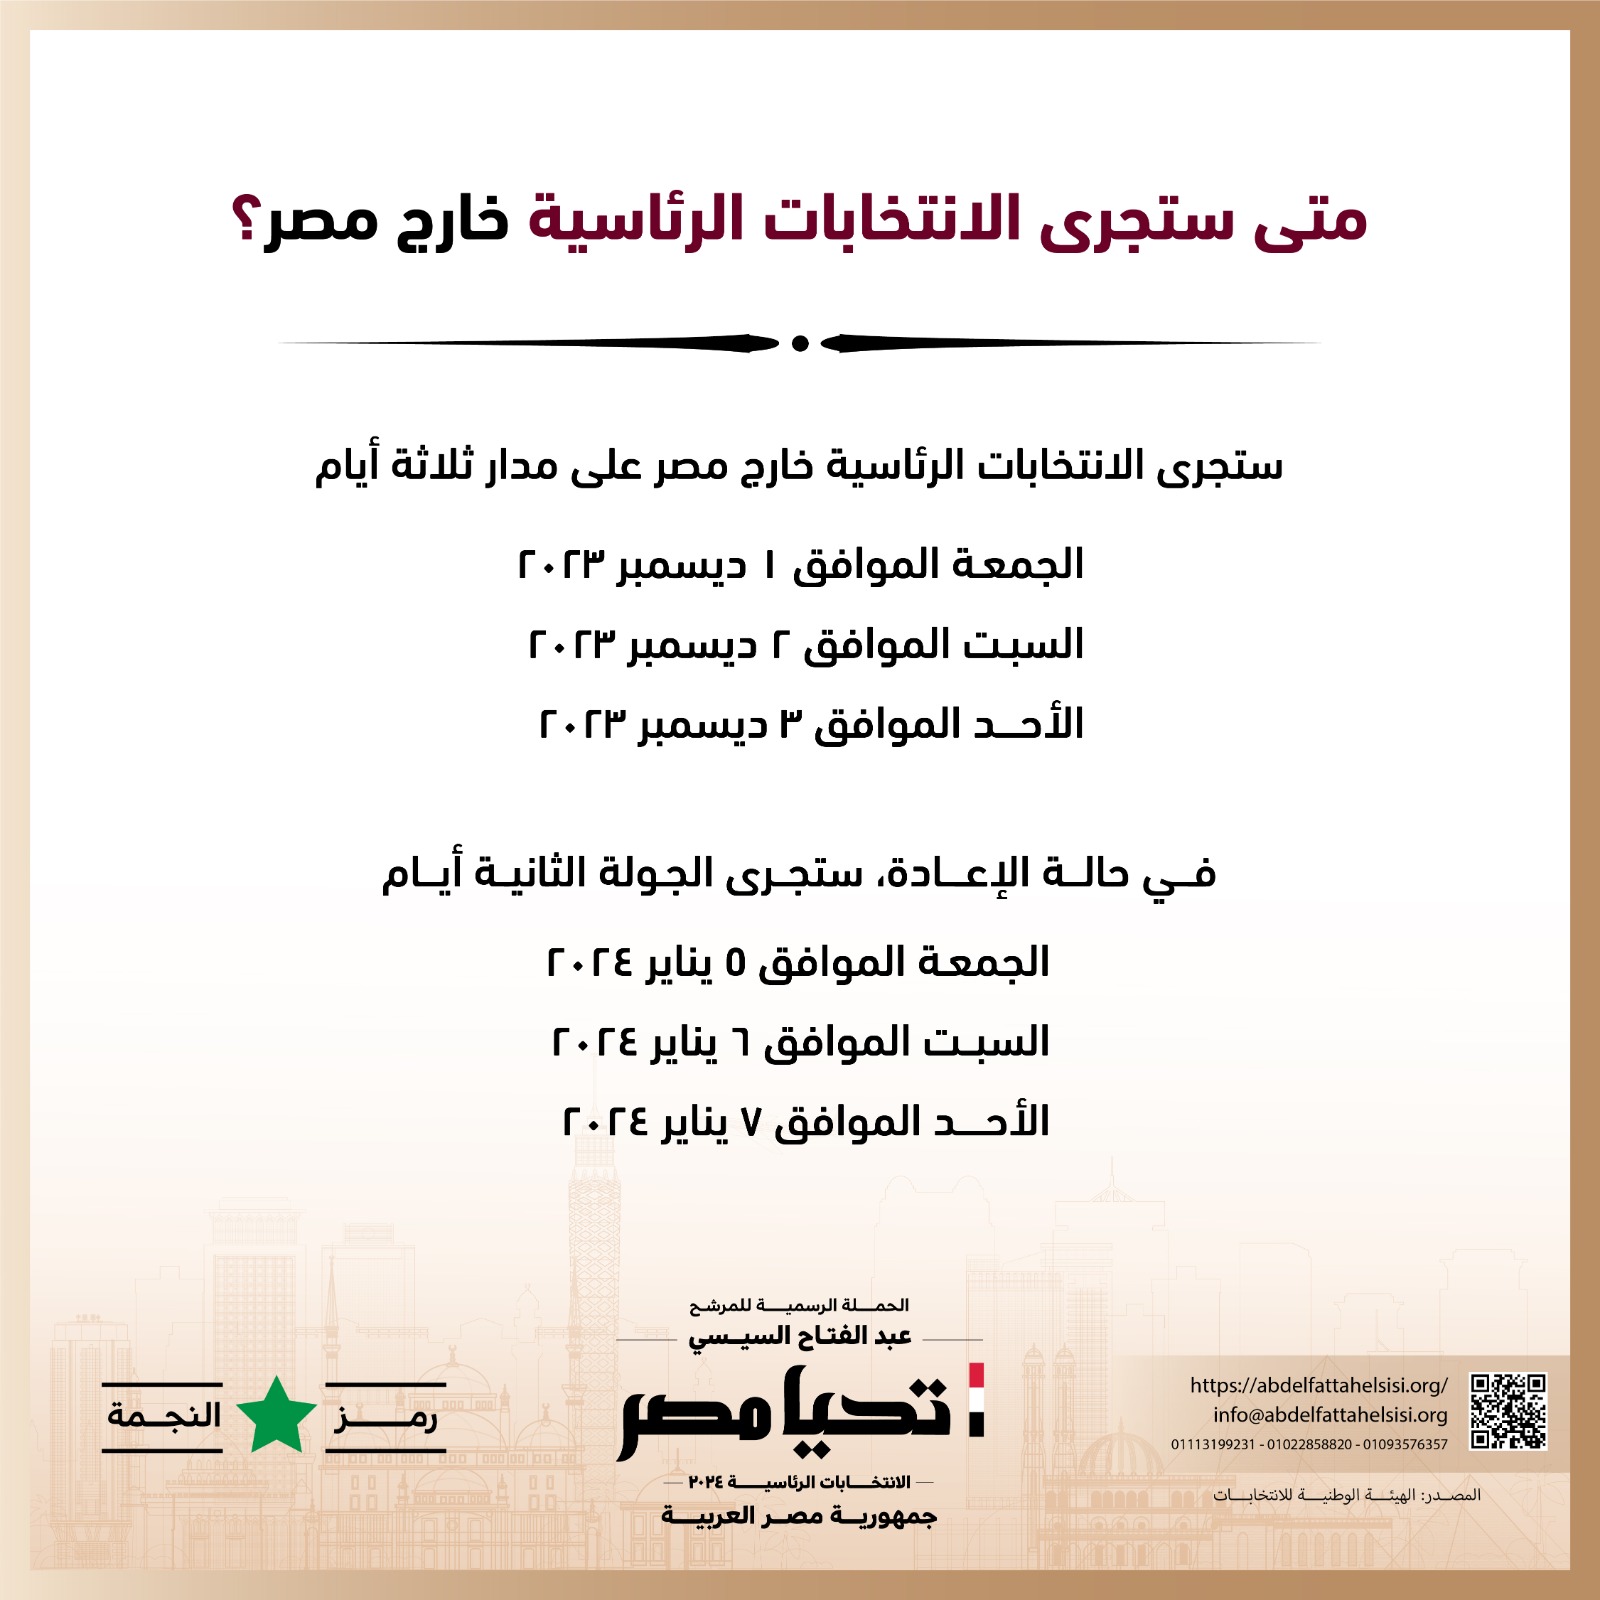 الحملة الرسمية للمرشح عبد الفتاح السيسي  (10)